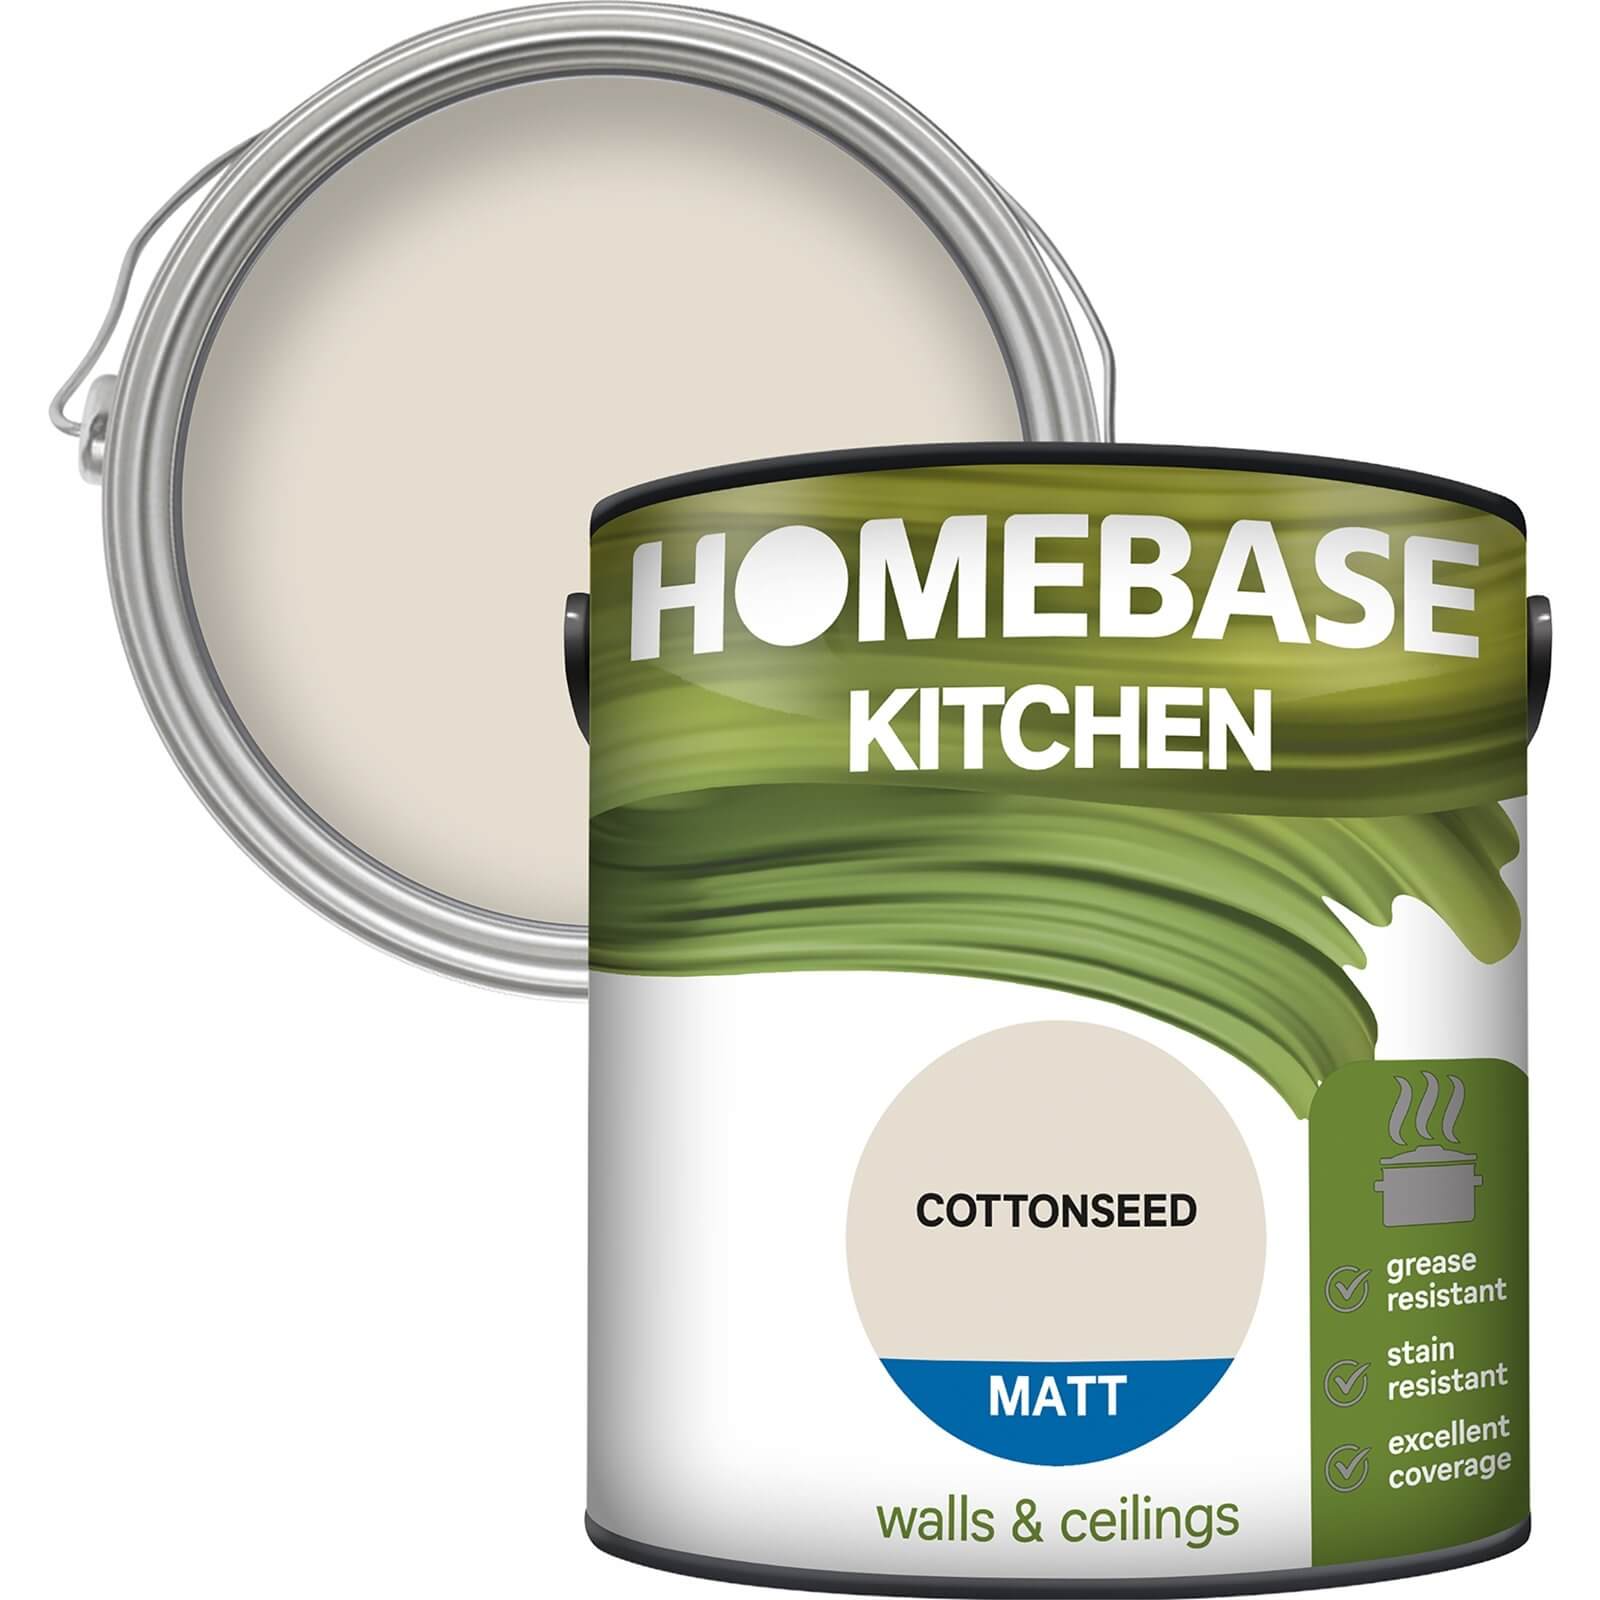 Homebase Kitchen Matt Paint - Cottonseed 2.5L